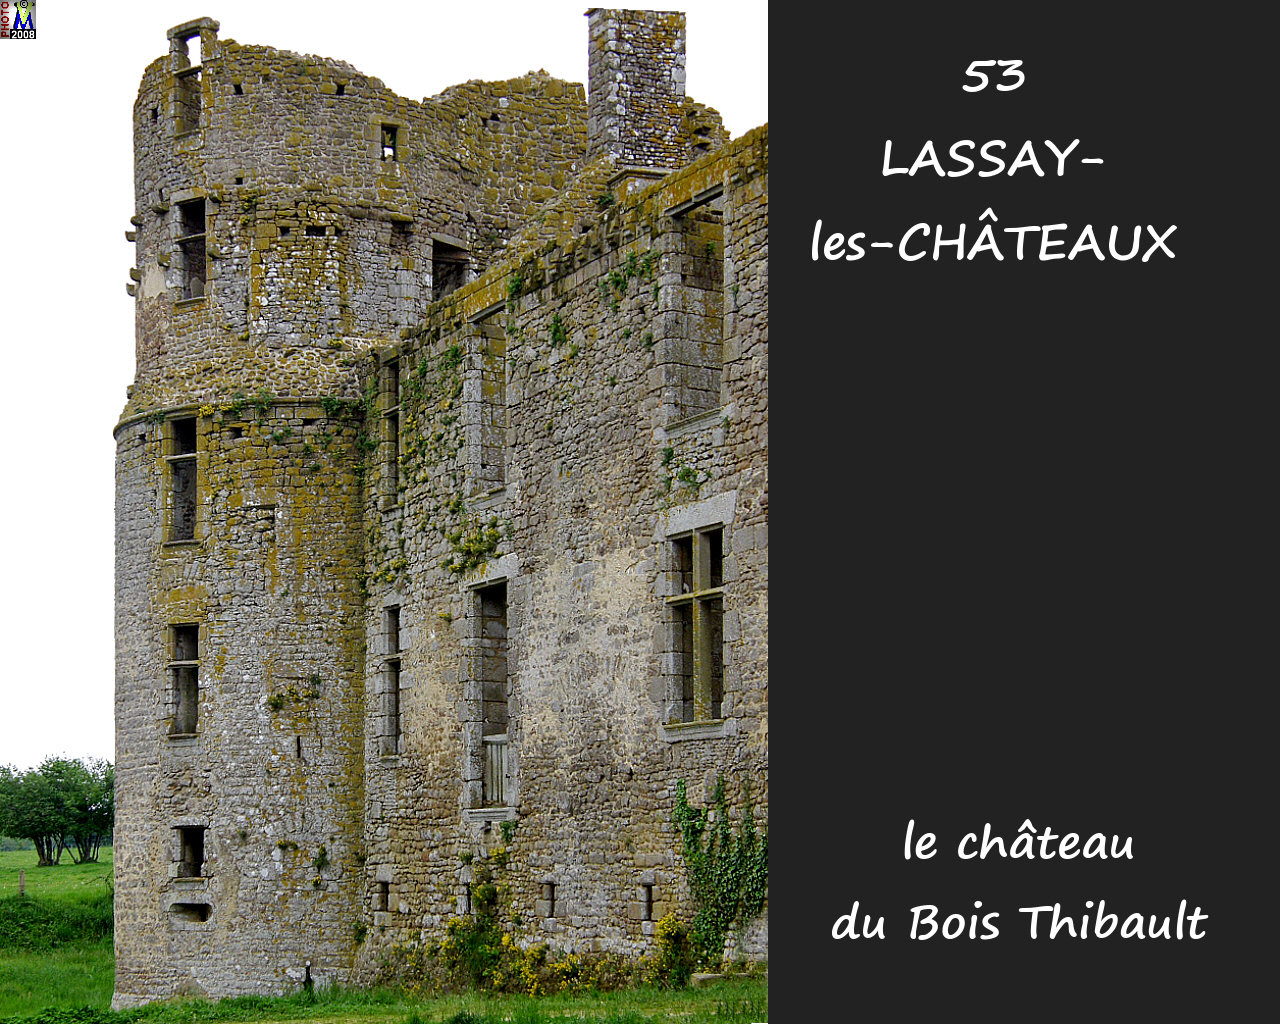 53LASSAY-CHATEAUX_chateauBT_112.jpg